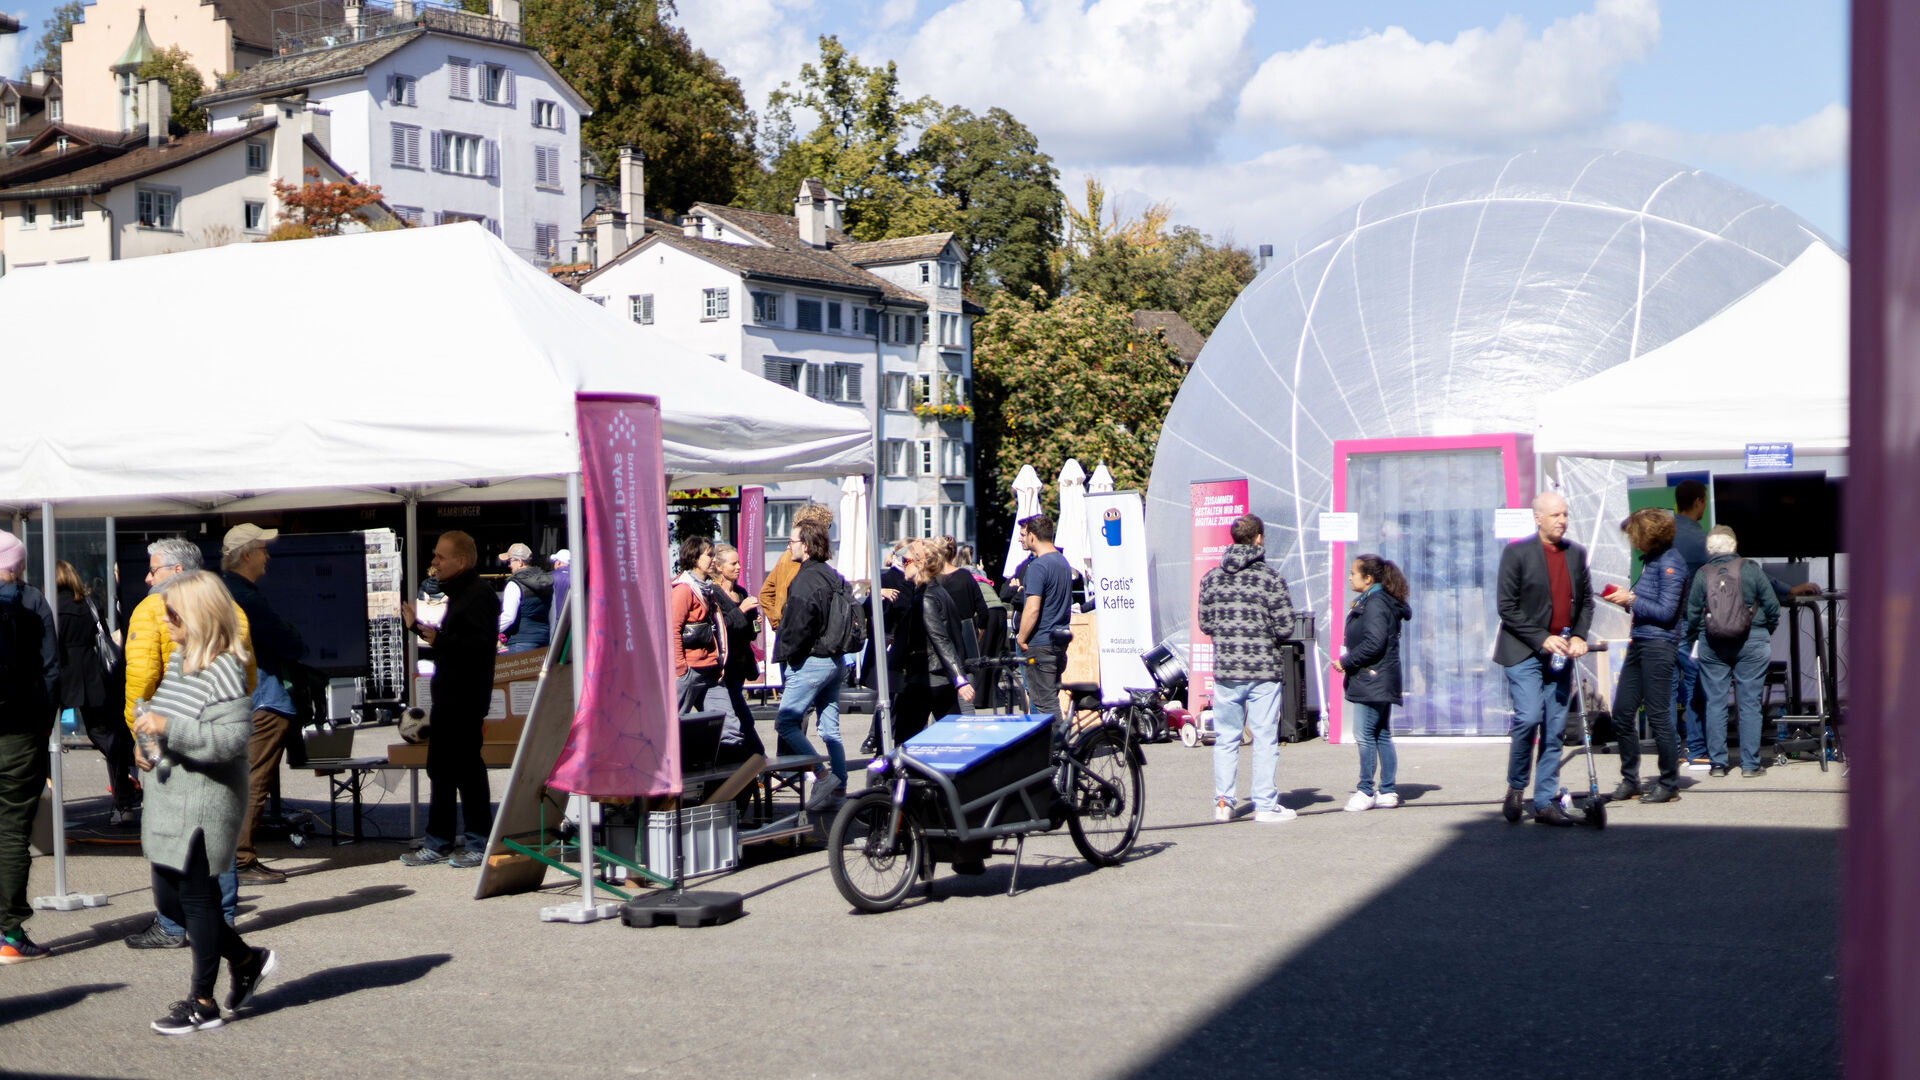 Le “Giornate Digitali Svizzere” 2022 hanno fatto tappa a Zurigo (Zurigo), Sciaffusa (Sciaffusa) e Winterthur (Zurigo) dal 19 al 25 settembre